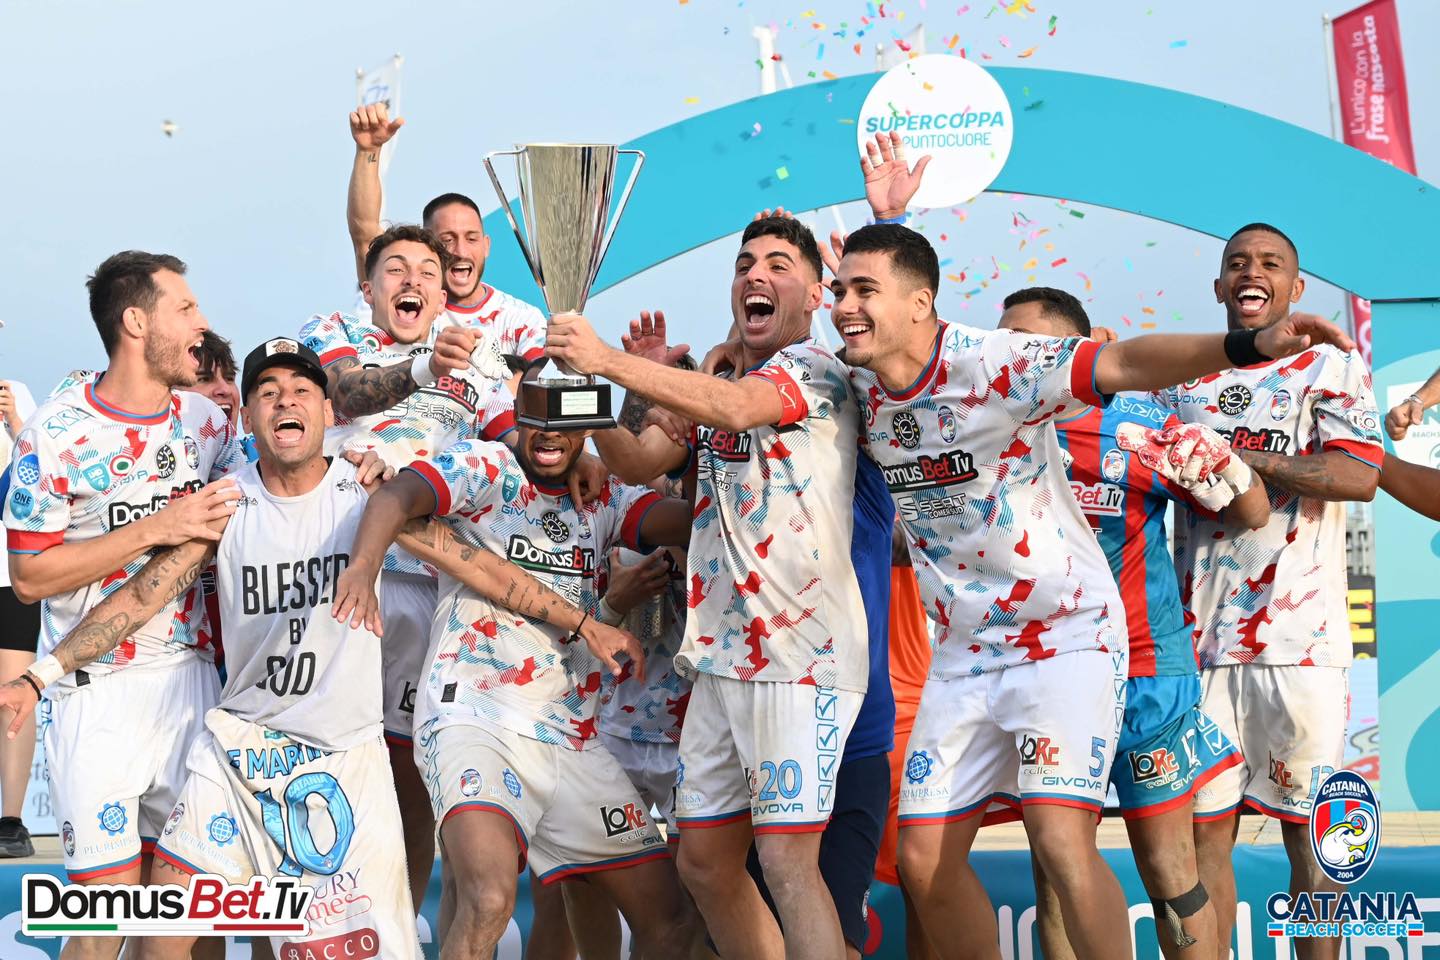 Beach Soccer: Domusbet.tv Catania batte il Viareggio e conquista la Supercoppa